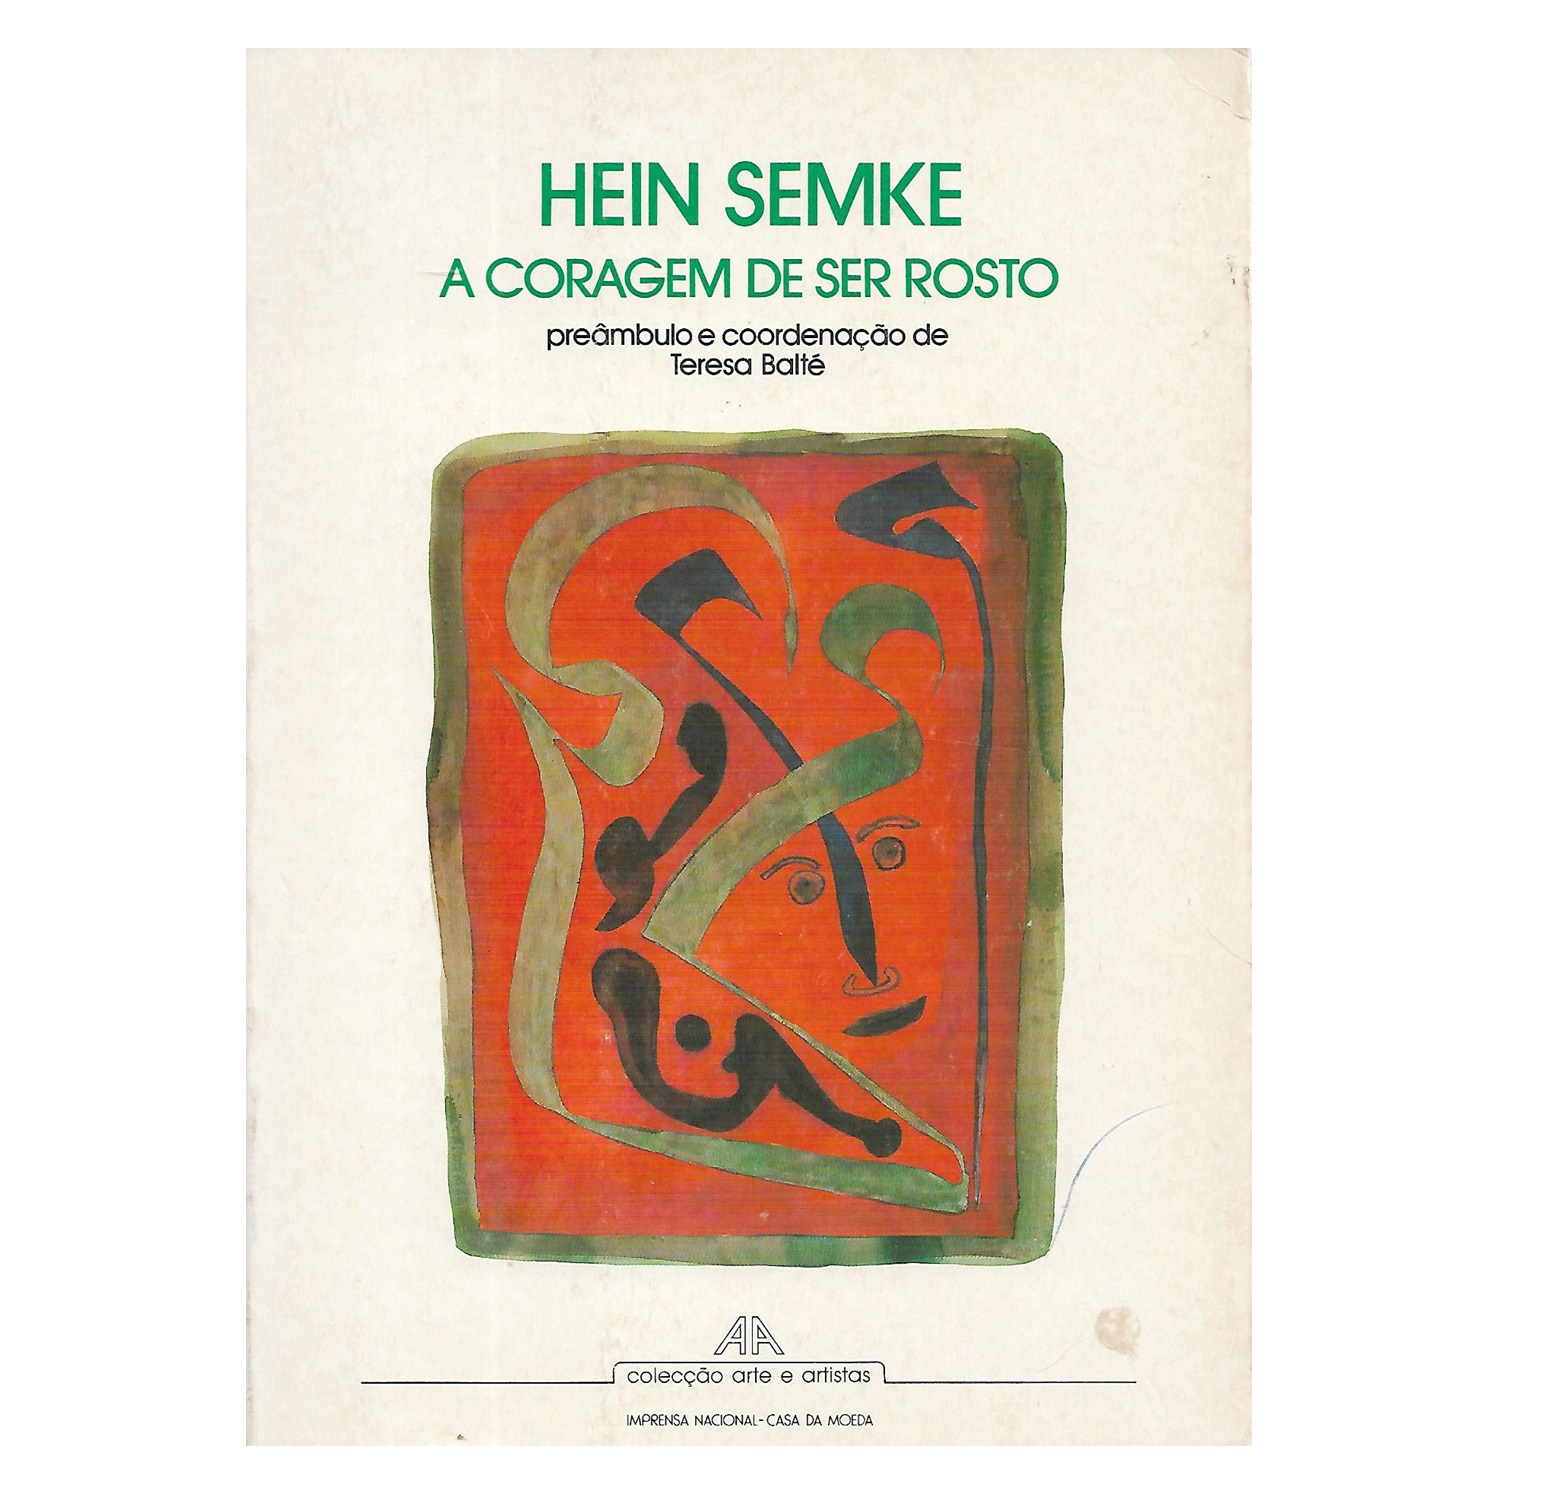 HEIN SEMKE - A CORAGEM DE SER ROSTO